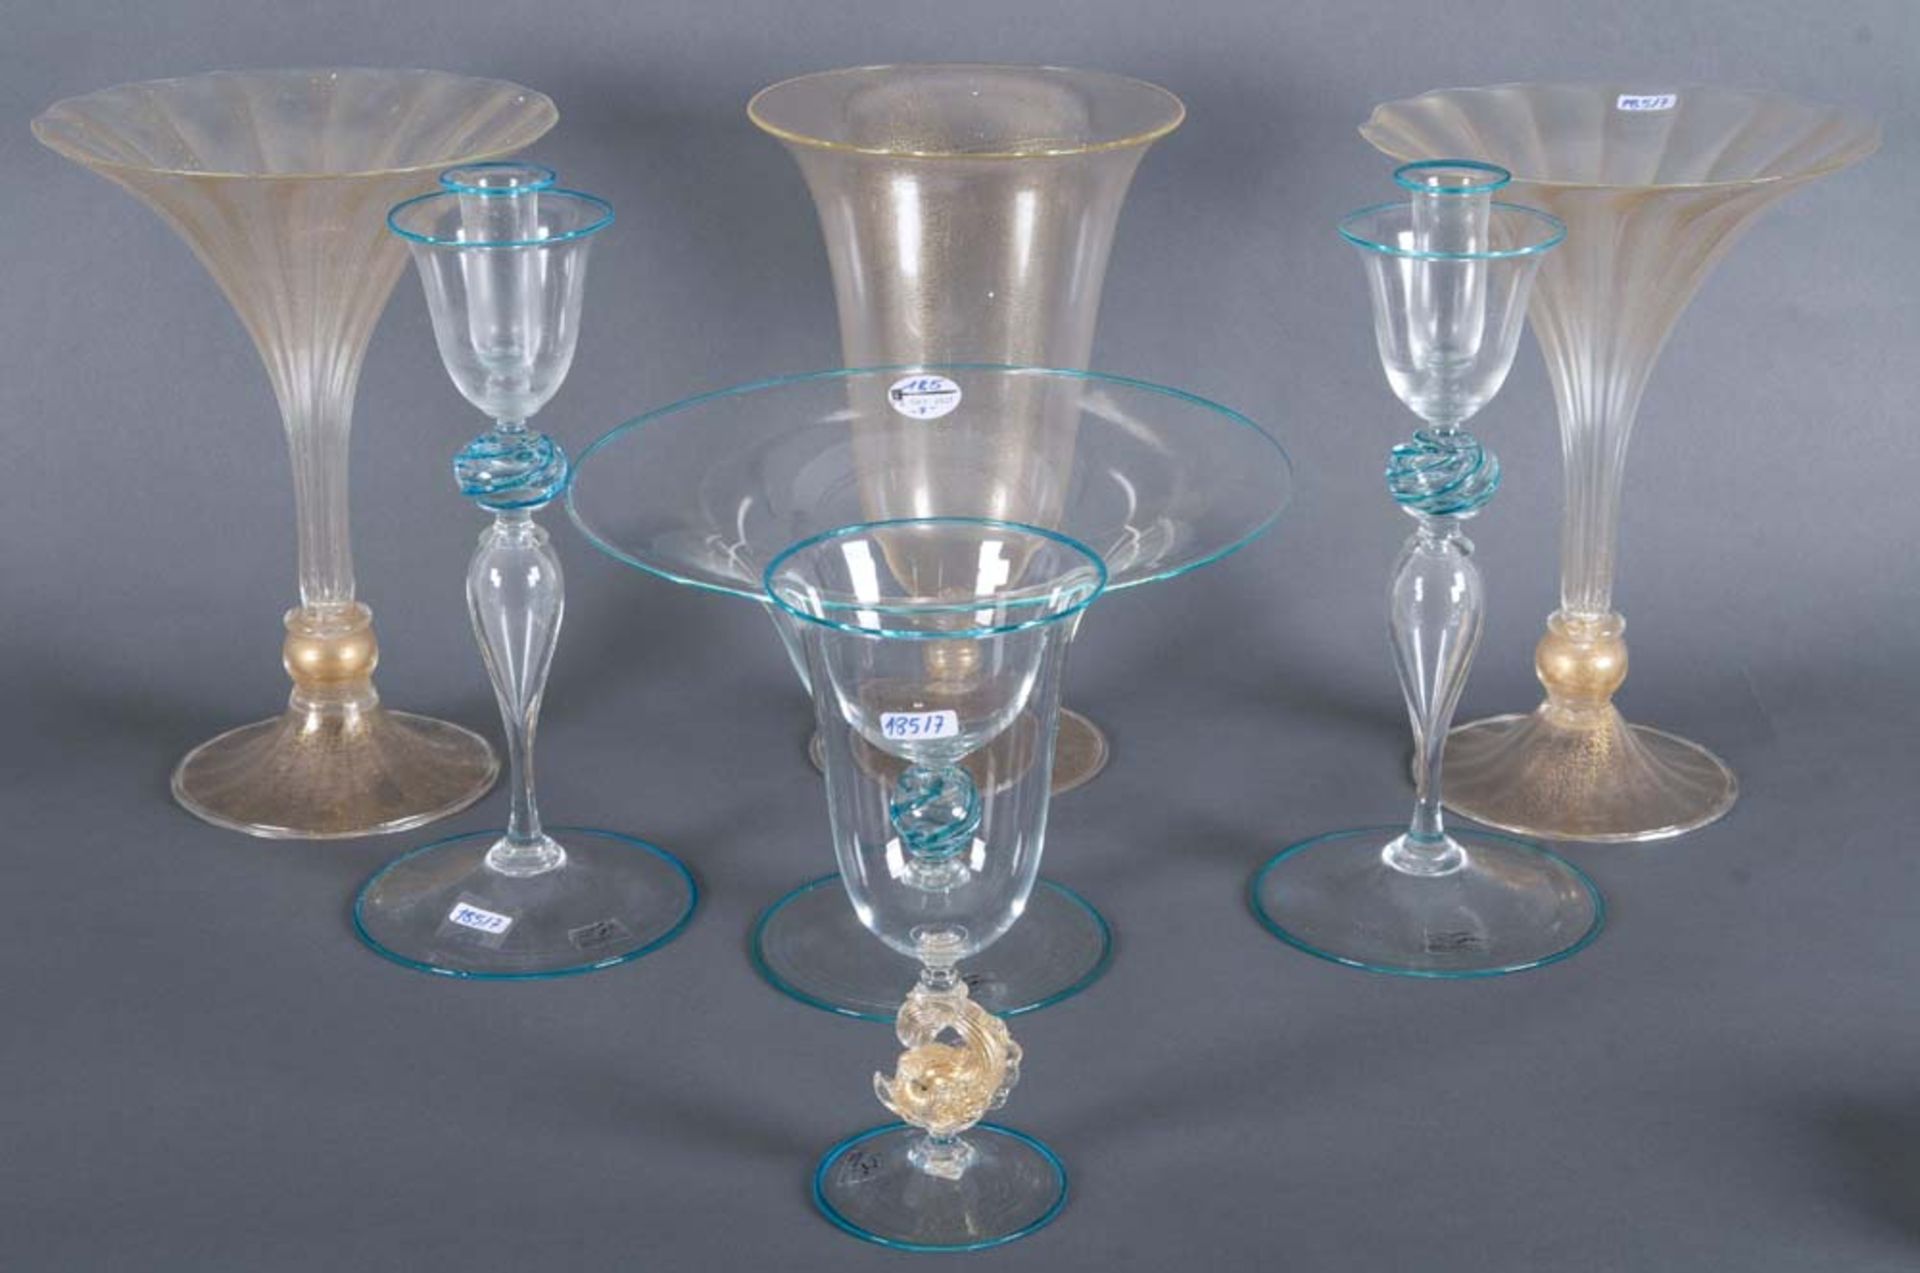 Siebentlgs. Konvolut Murano-Glas: Ein Becher, eine Fußschale, zwei Kerzenleuchter und drei Vasen.